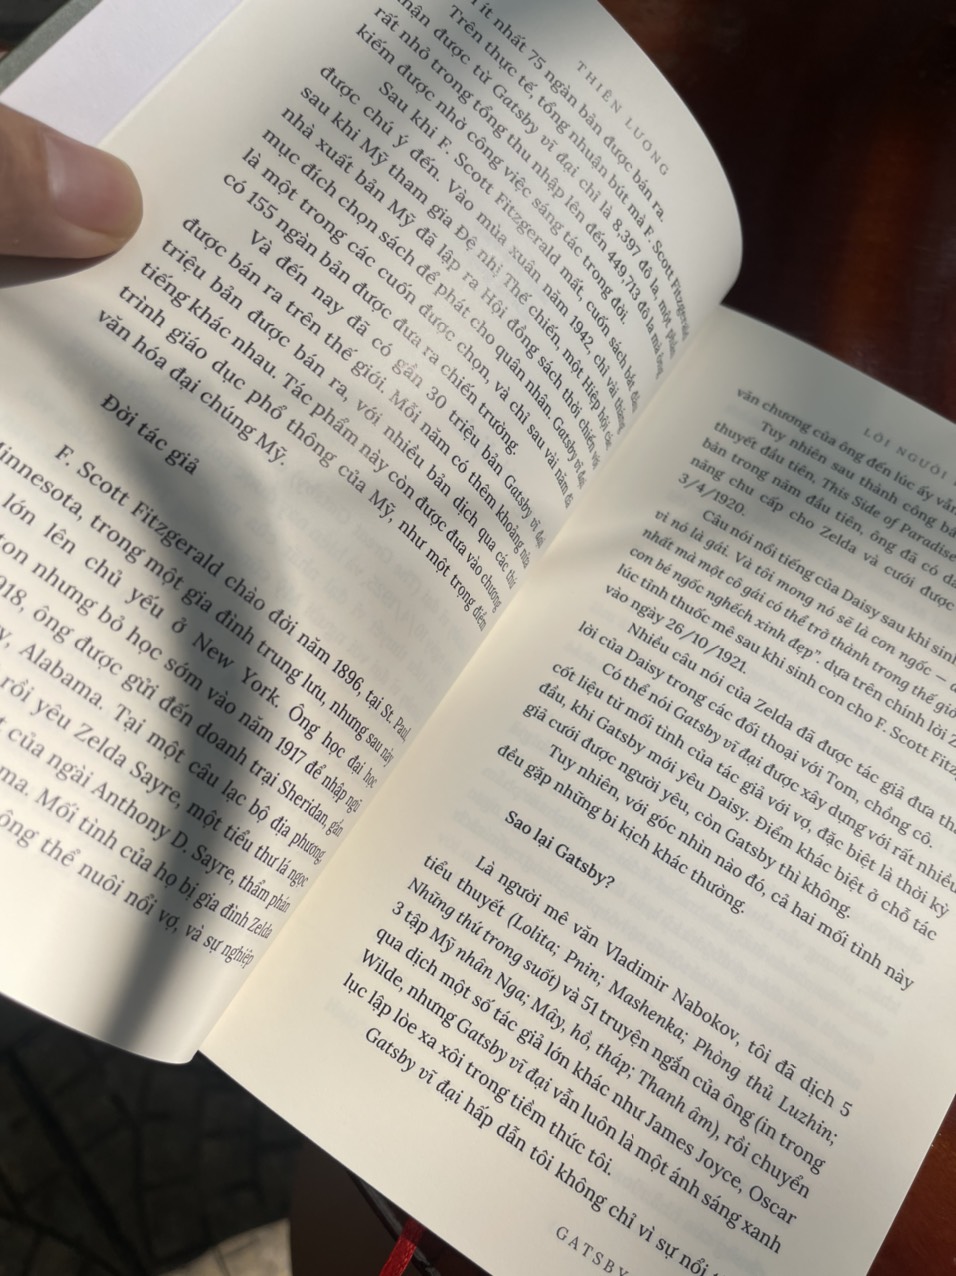 GATSBY VĨ ĐẠI – F. Scott Fitzgerald – Dịch giả Thiên Lương - Nxb Văn Học – bìa mềm